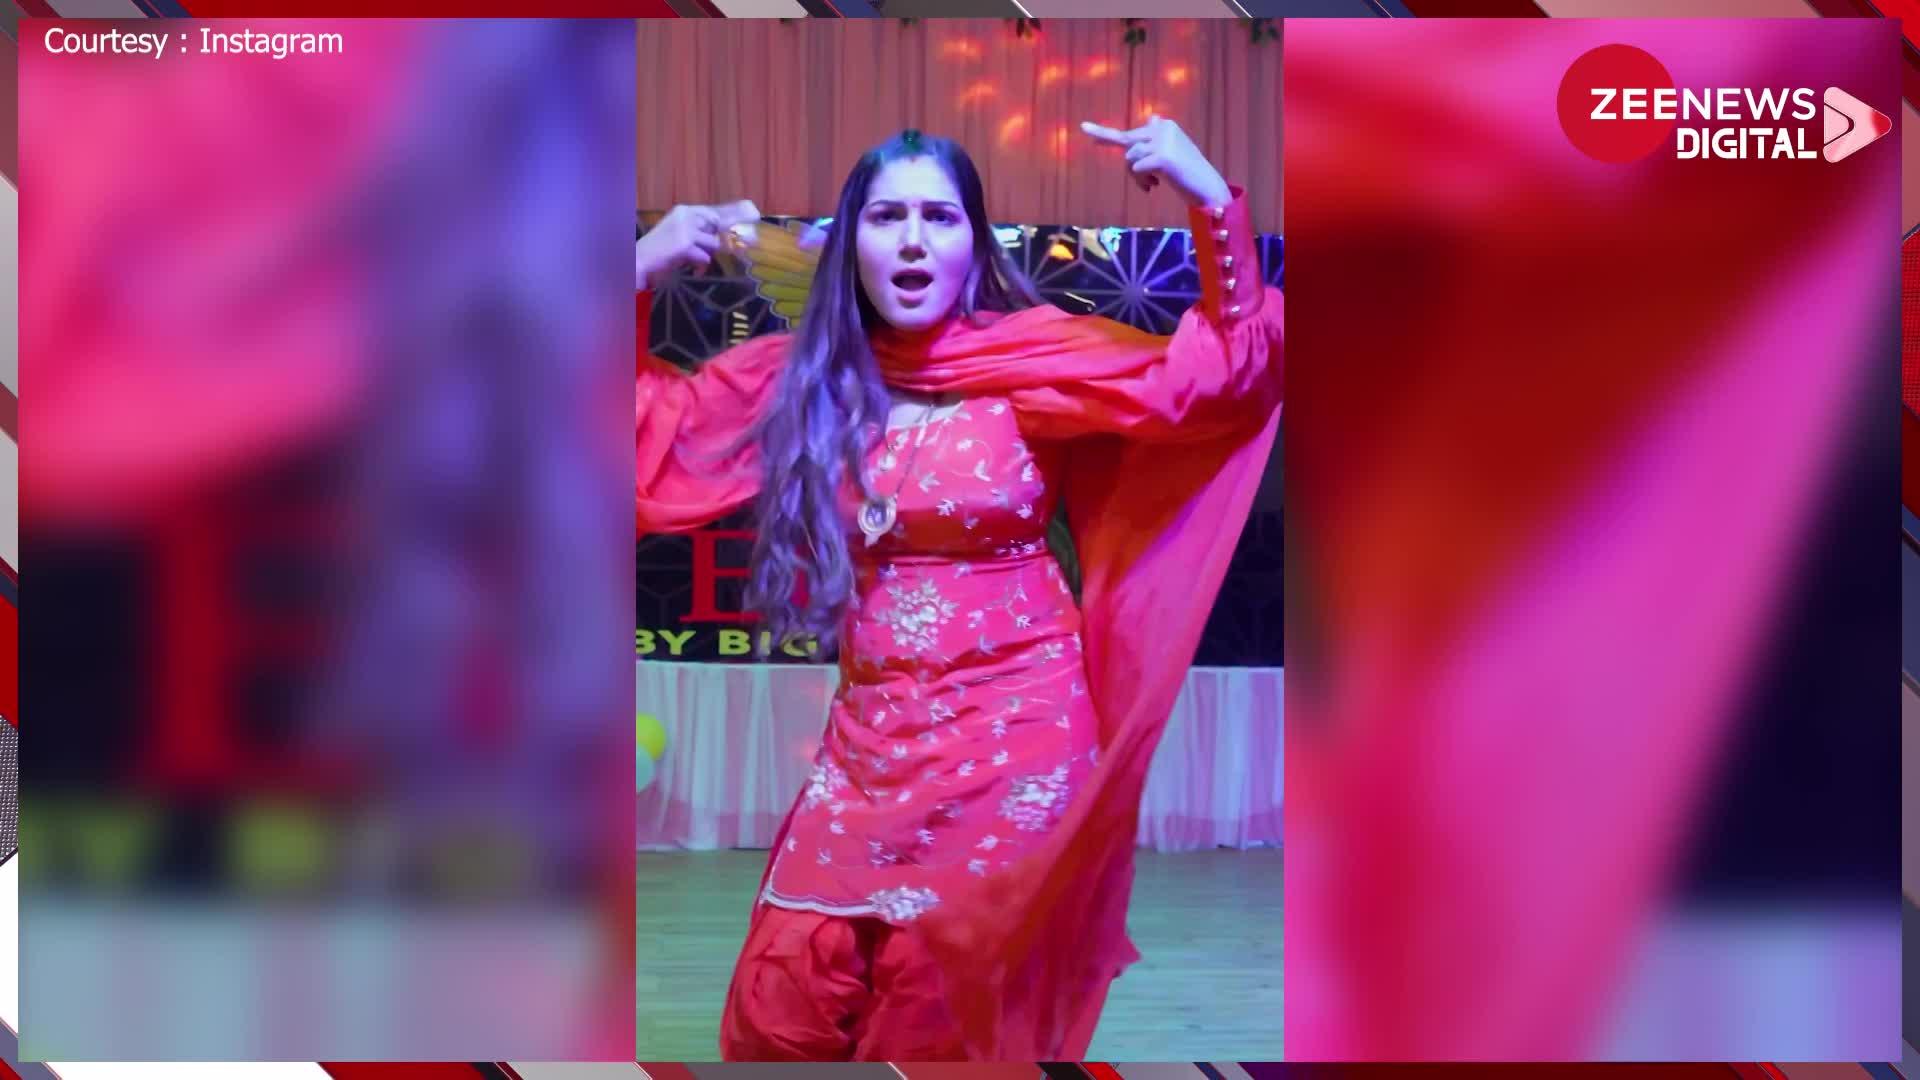 1920px x 1080px - Sapna Choudhary desi queen share hot and sexy dance in backless suit people  eyes stuck on her tattoo | à¤¬à¥ˆà¤•à¤²à¥‡à¤¸ à¤¸à¥‚à¤Ÿ à¤ªà¤¹à¤¨ Sapna Choudhary à¤¨à¥‡ à¤¹à¤¿à¤²à¤¾à¤ˆ à¤•à¤®à¤°à¤¿à¤¯à¤¾,  à¤ªà¥€à¤  à¤ªà¤° à¤¬à¤¨à¥‡ à¤Ÿà¥ˆà¤Ÿà¥‚ à¤ªà¤°